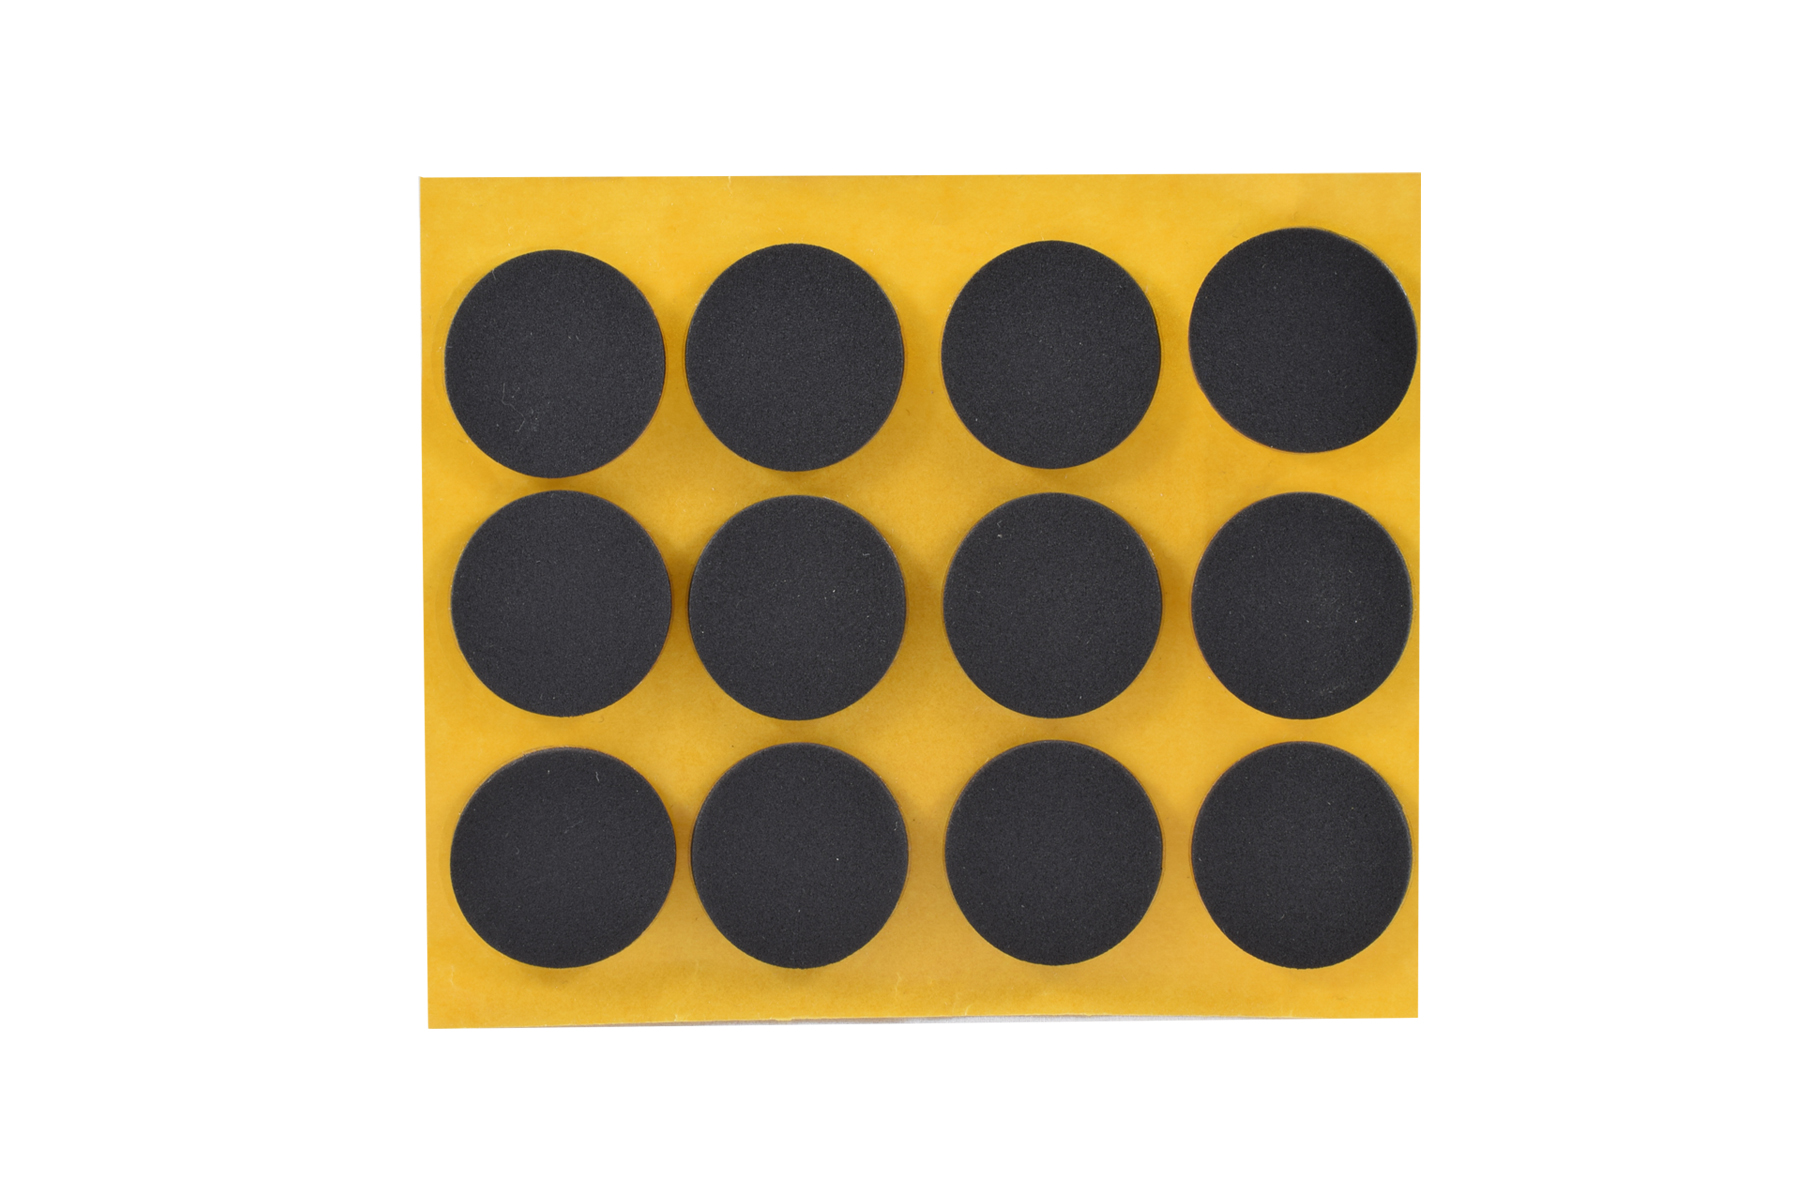 Antirutsch-Pads, selbstklebend, schwarz | 48 x 48 mm | Stärke: 3 mm (8 Stk.)